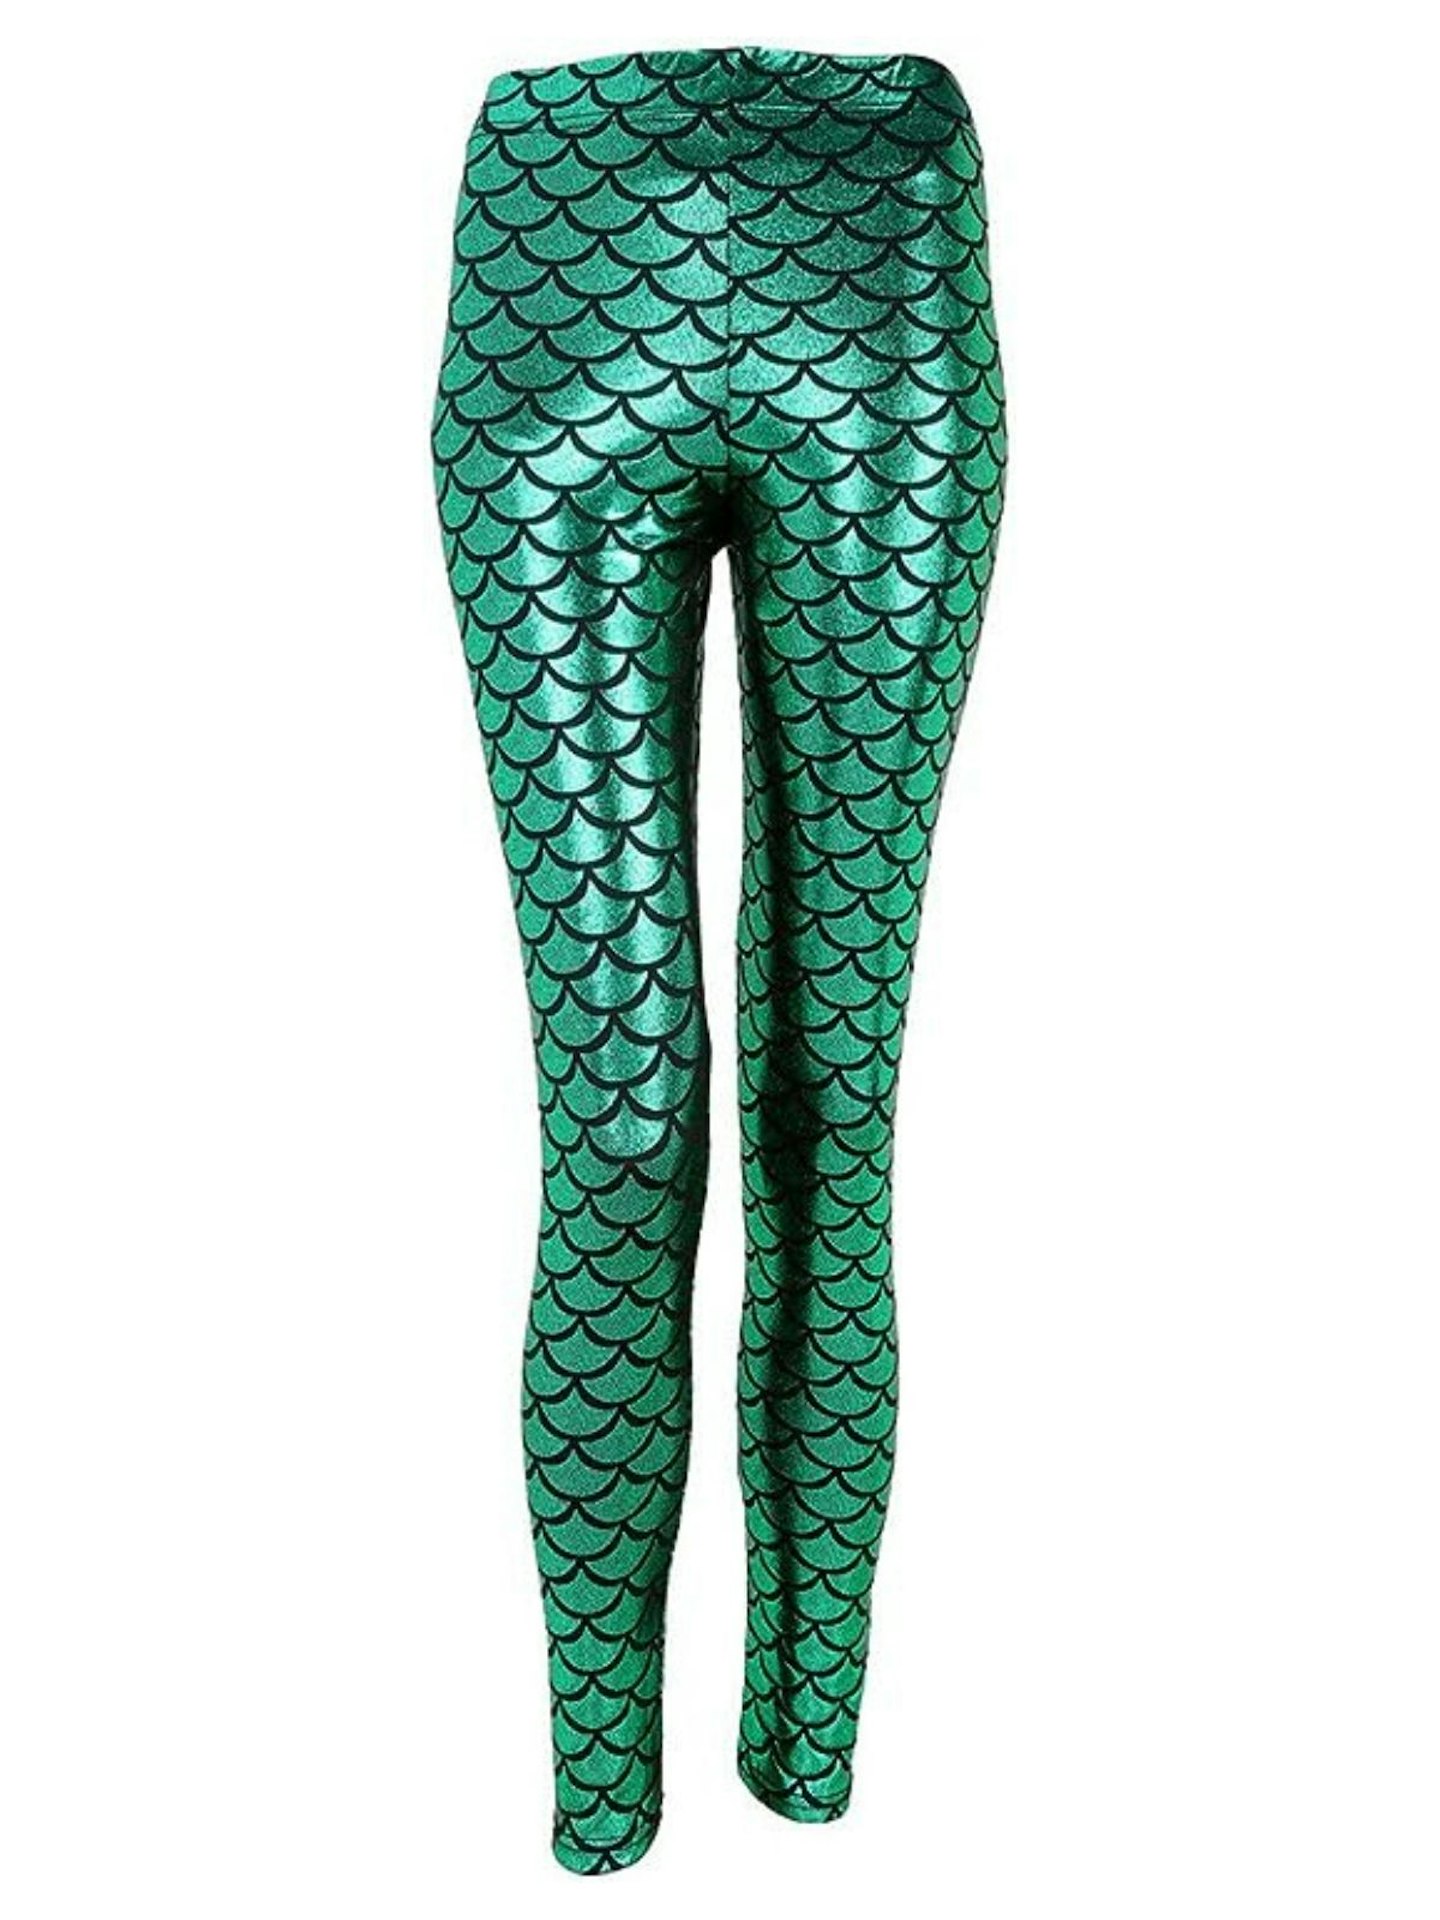 Ayliss Mermaid Printed Leggings